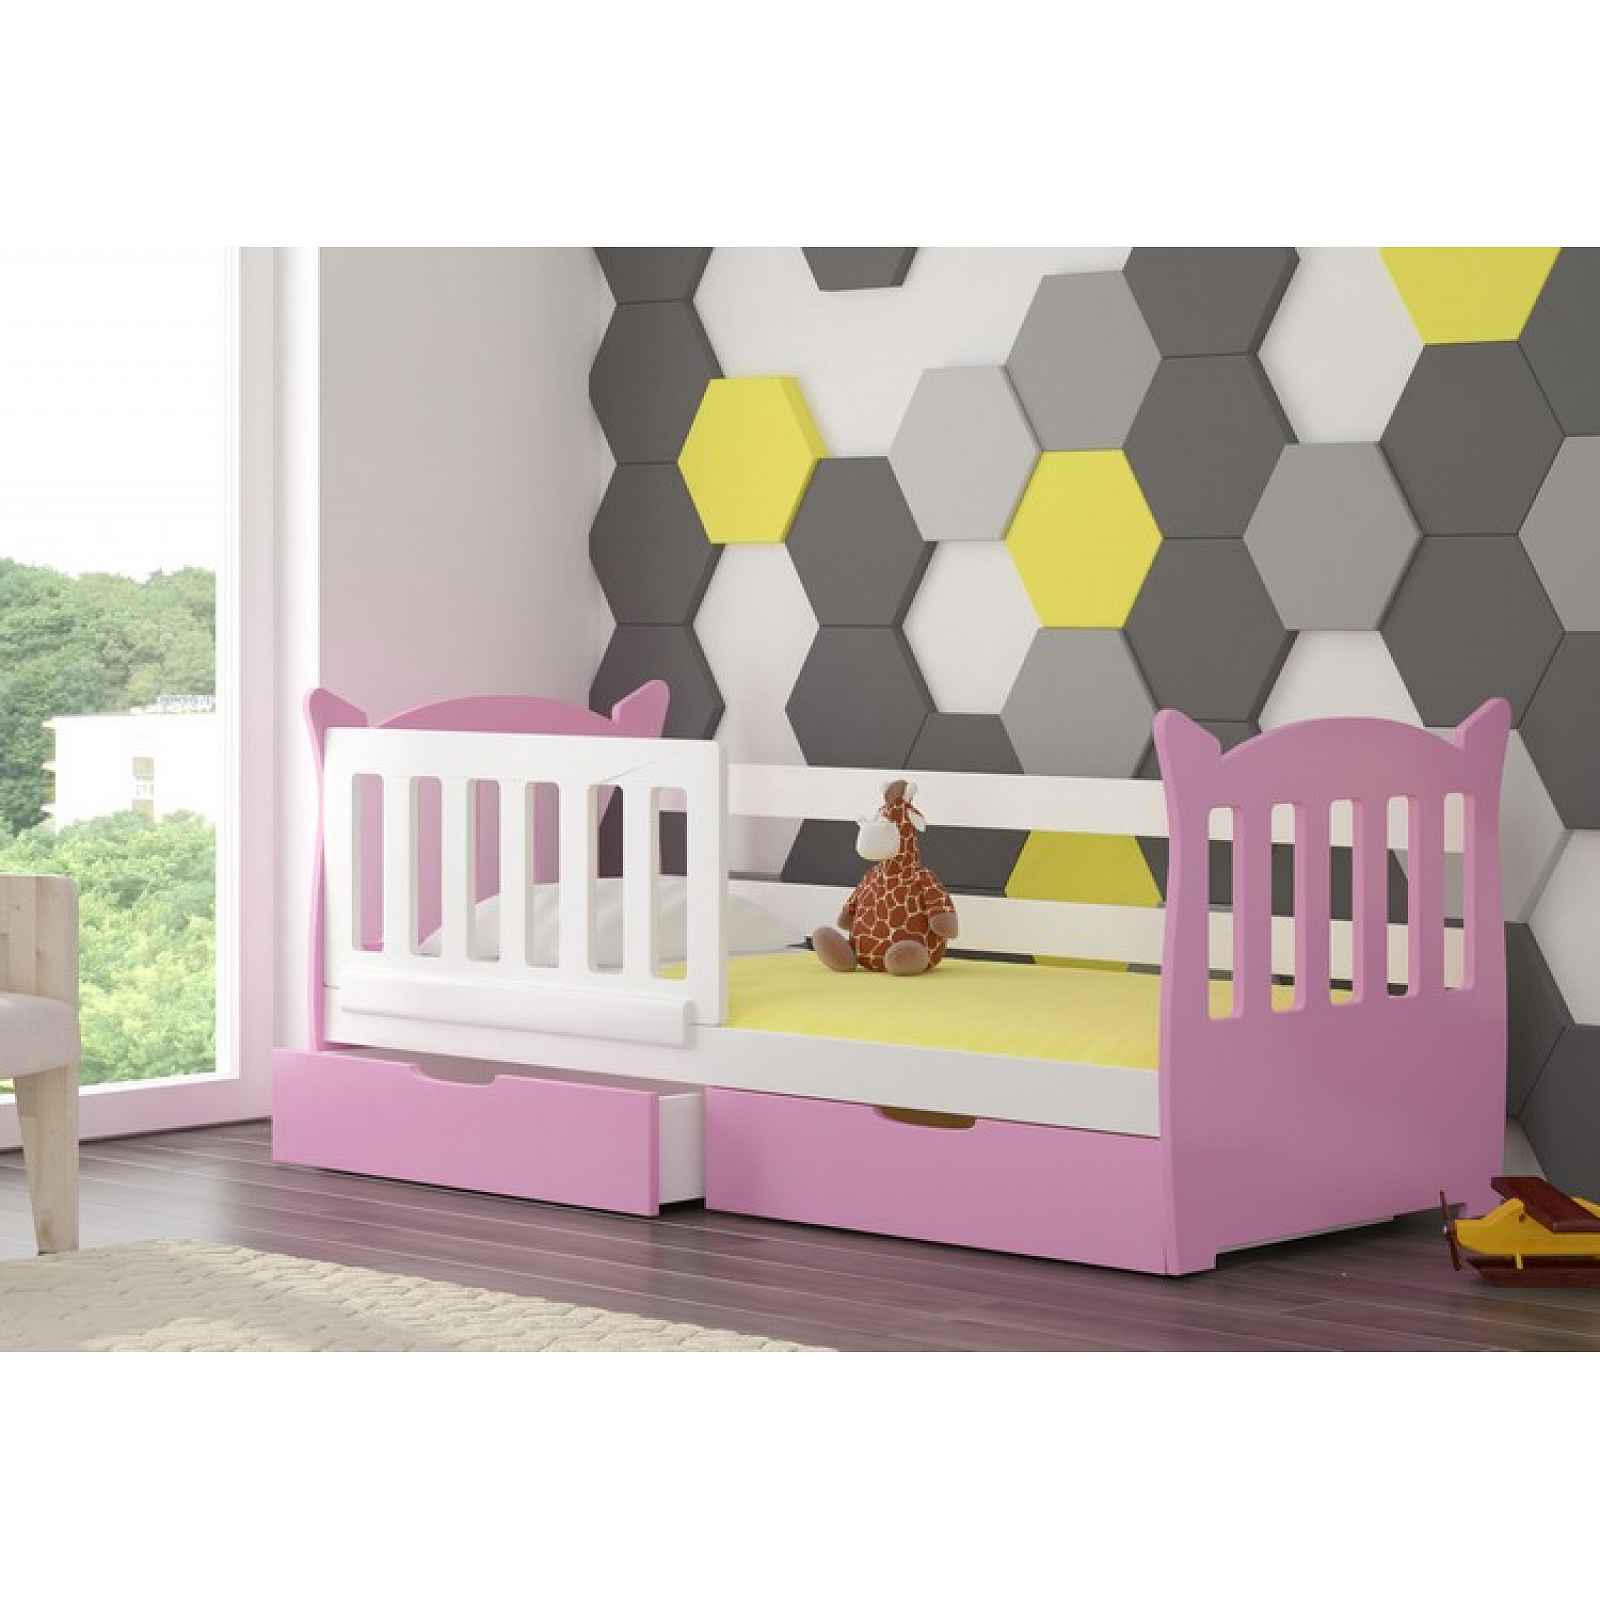 Dětská postel Lekra, bílá/růžová + matrace ZDARMA! HELCEL